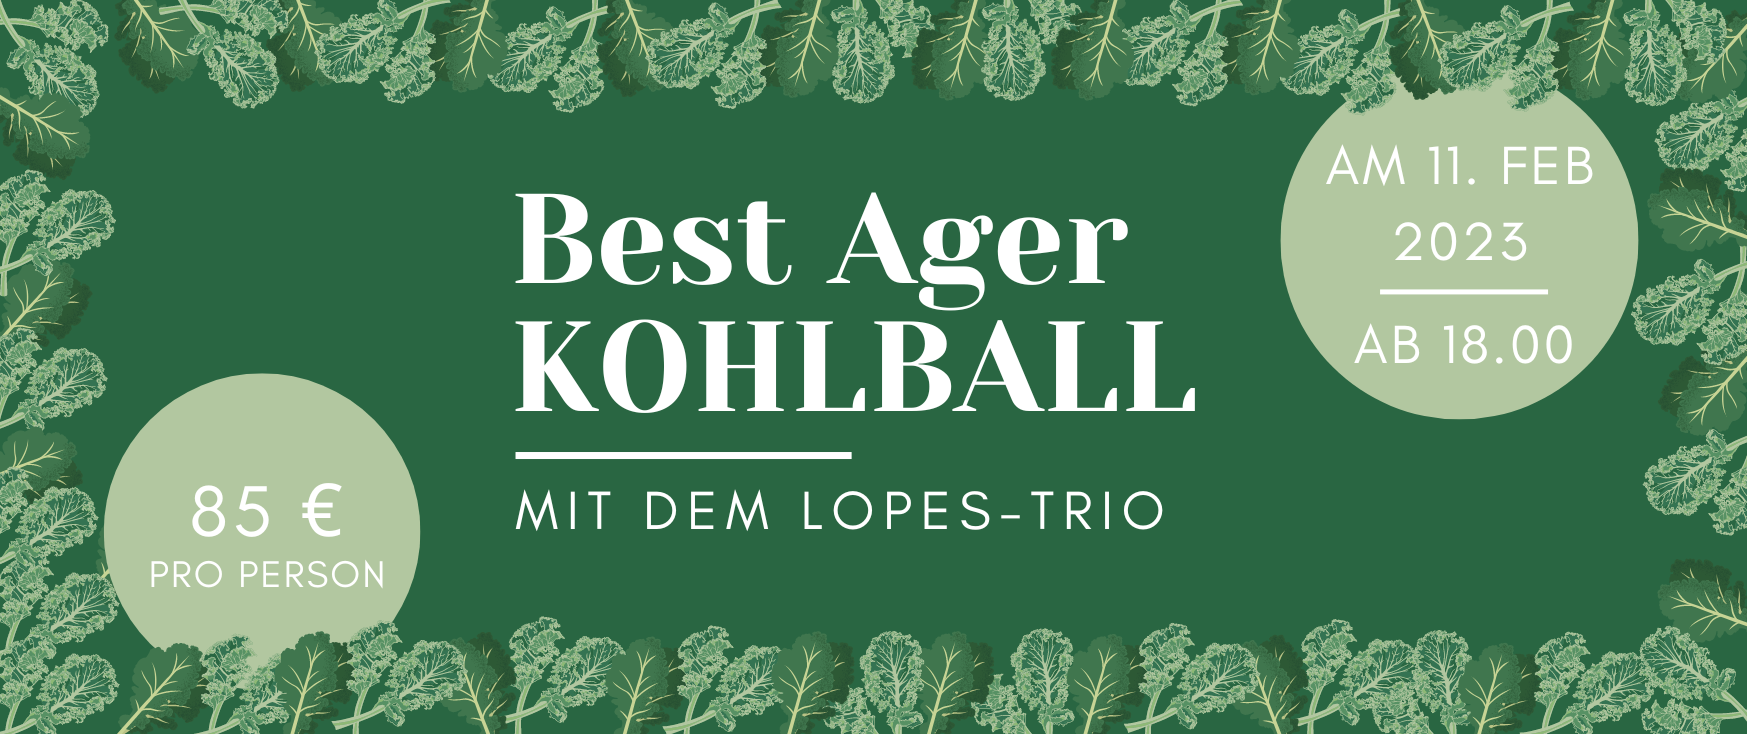 Best ager Kohlball